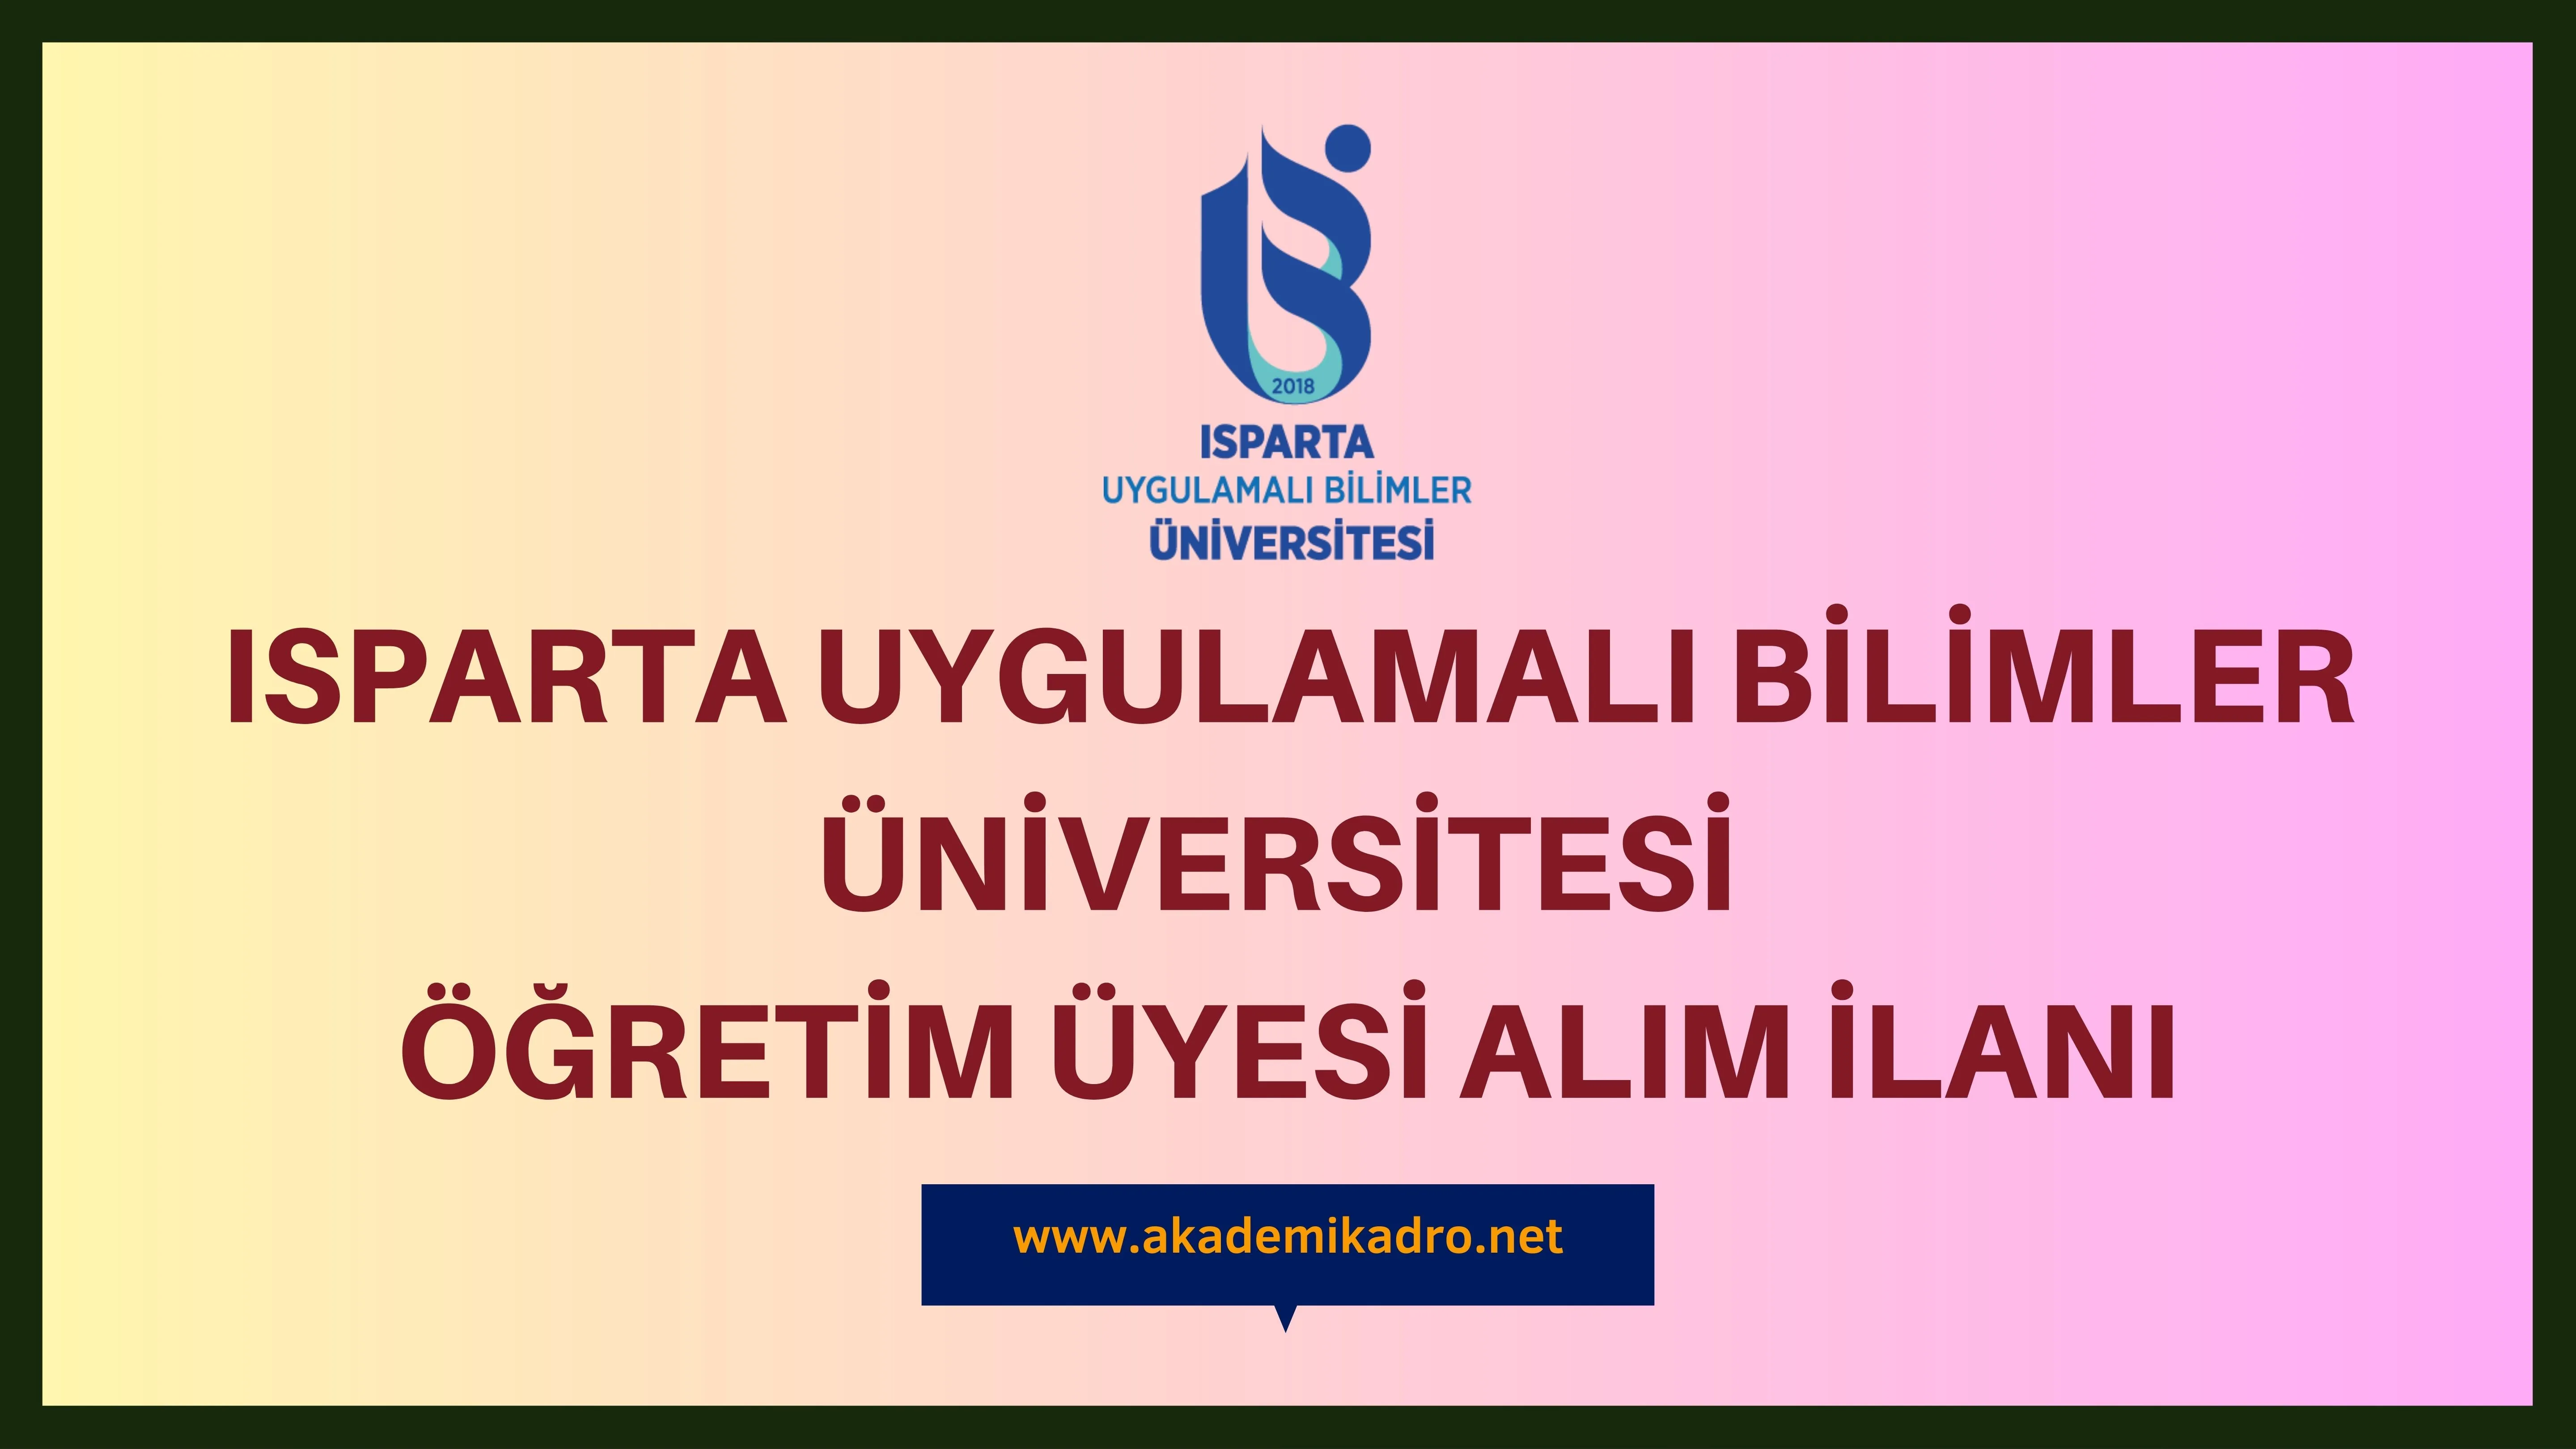 Isparta Uygulamalı Bilimler Üniversitesi 28 akademik personel alacak